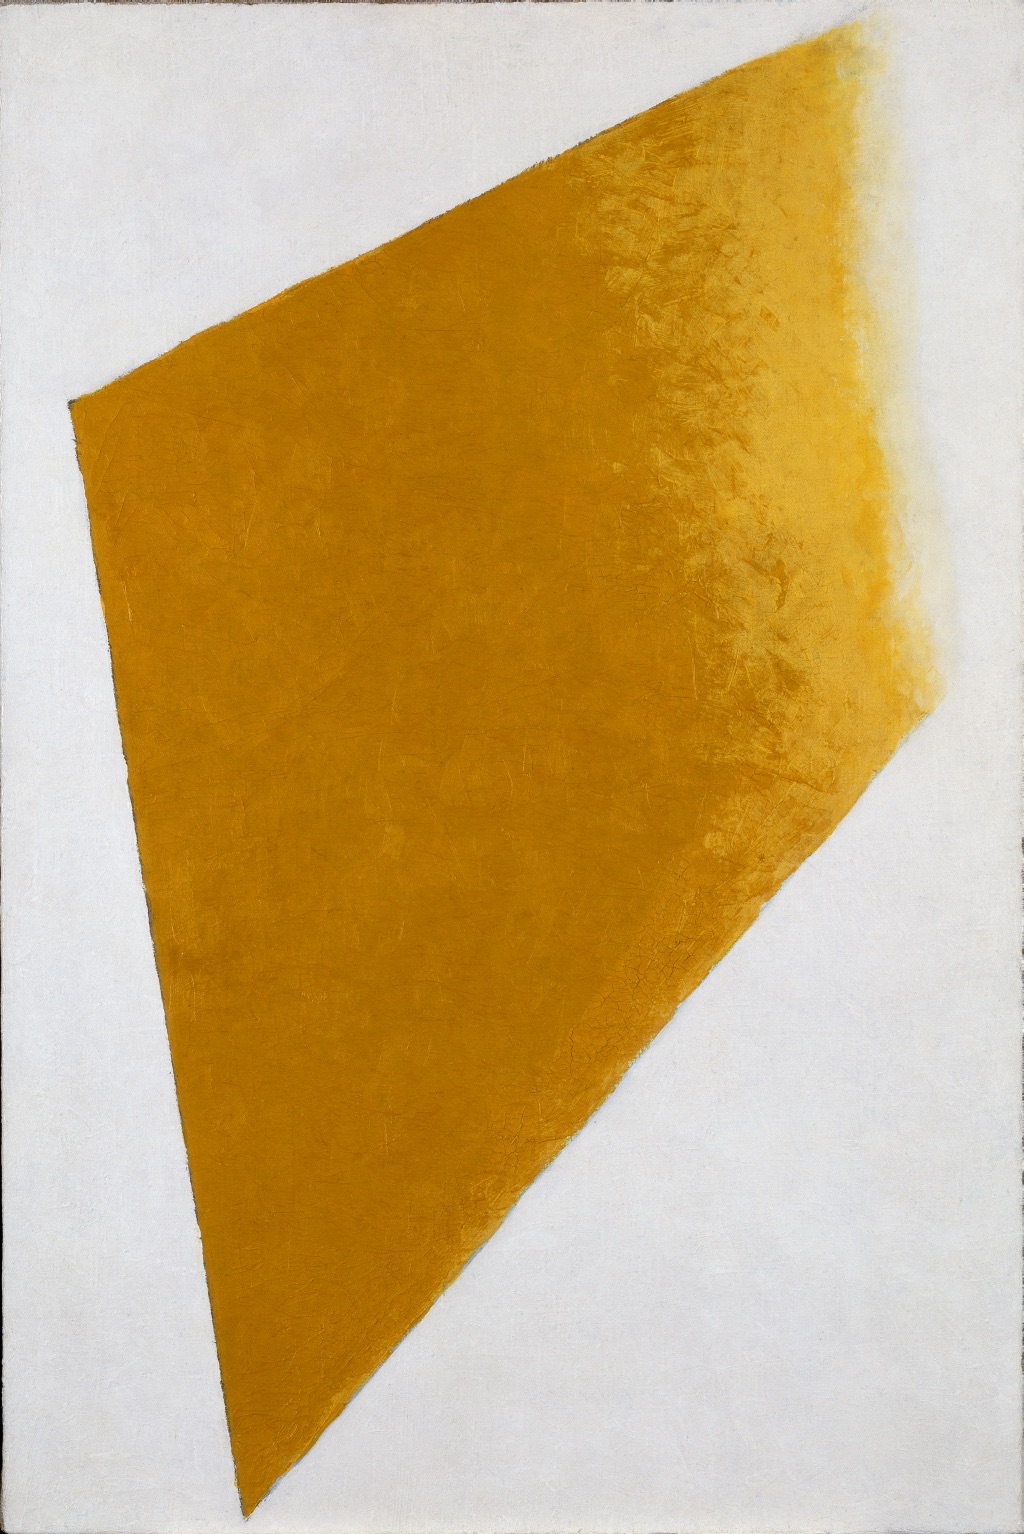 Gelbe Ebene in Auflösung by Kazimir Malevich - 1917-1918 - 109 x 73.5 x 4.5 cm Stedelijk Museum